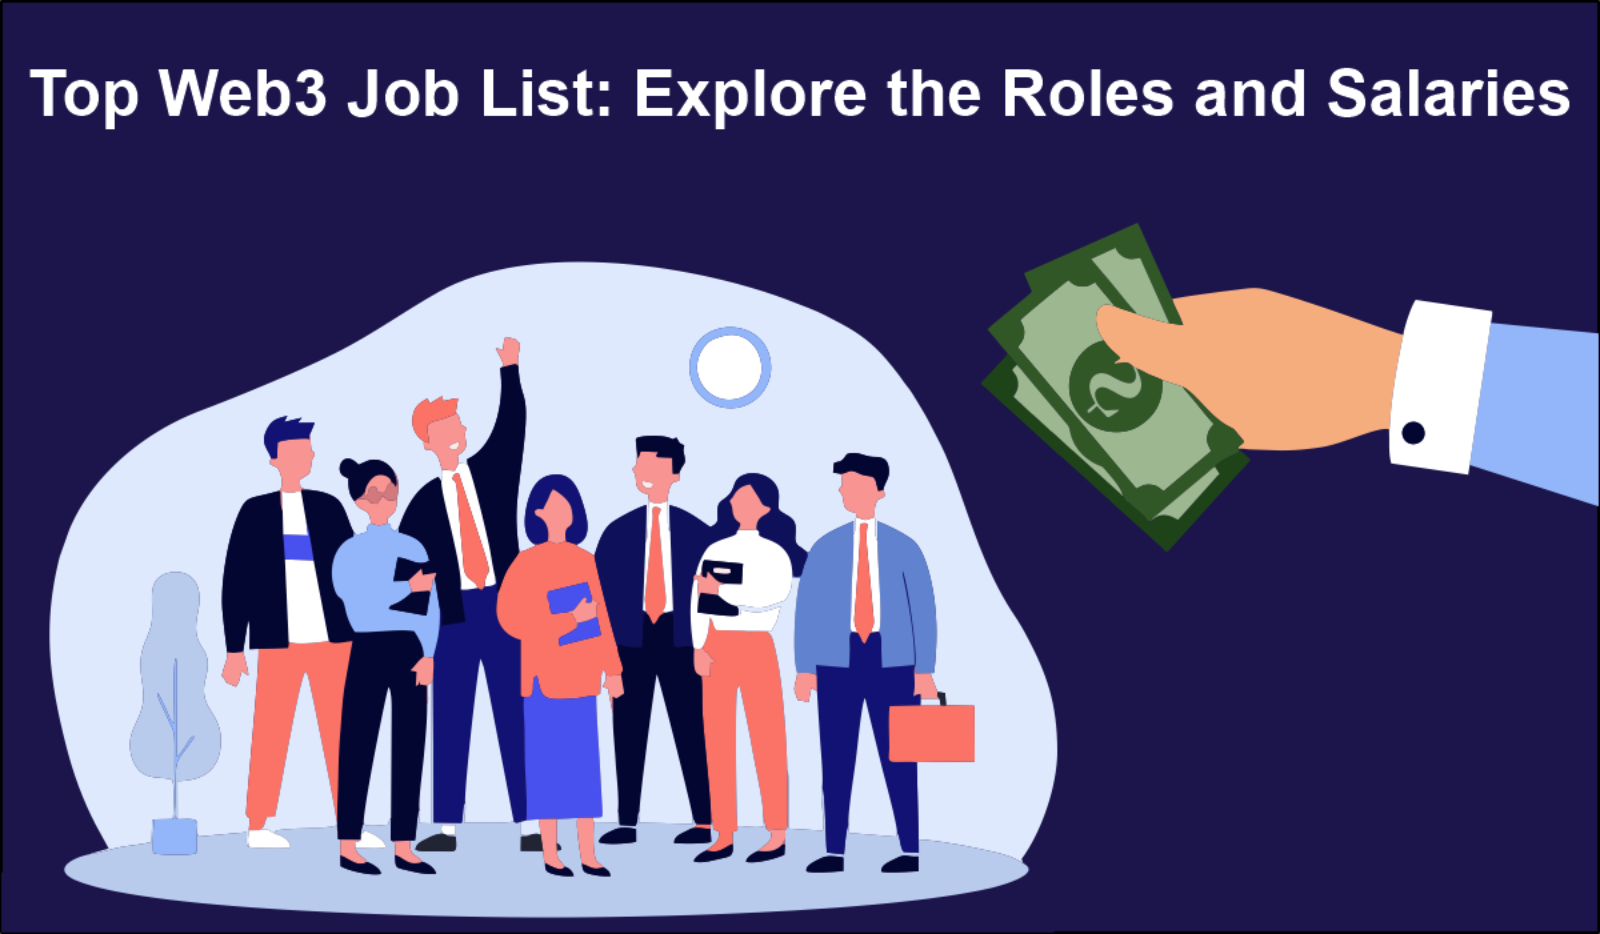 Top Web3 Job List: Explore the Roles and Salaries